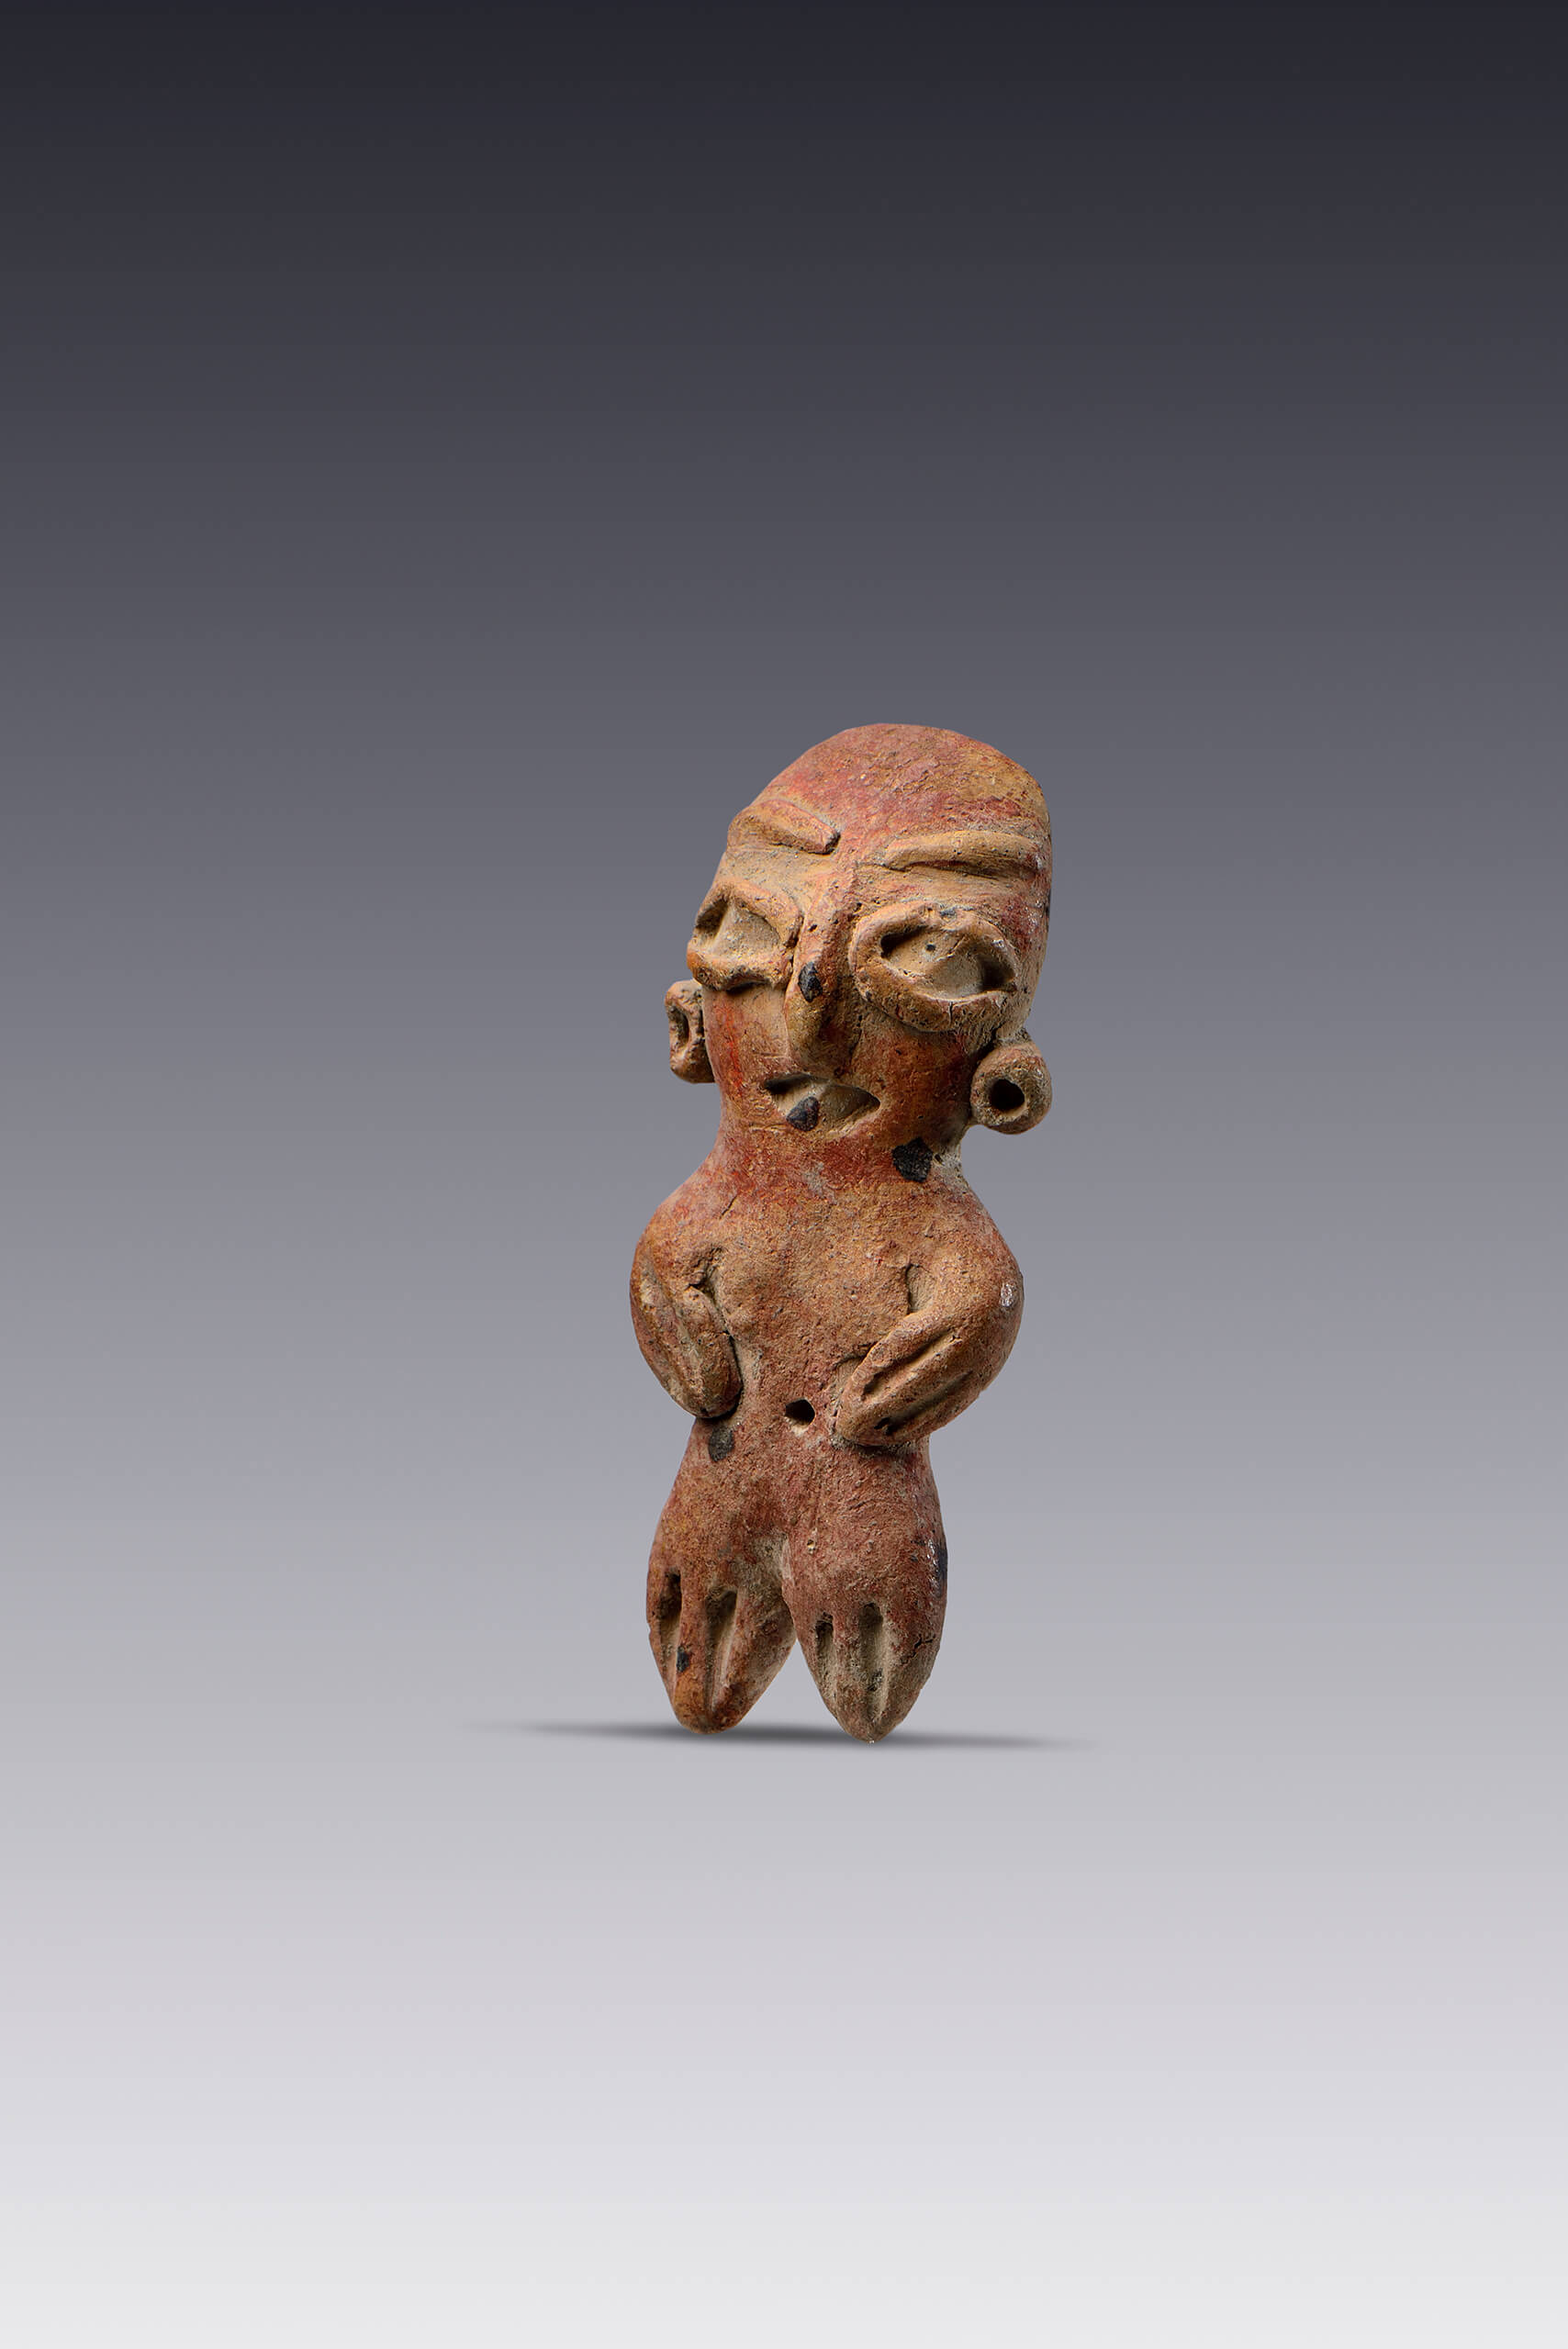 Representación masculina y femenina  | El México antiguo. Salas de Arte Prehispánico | Museo Amparo, Puebla